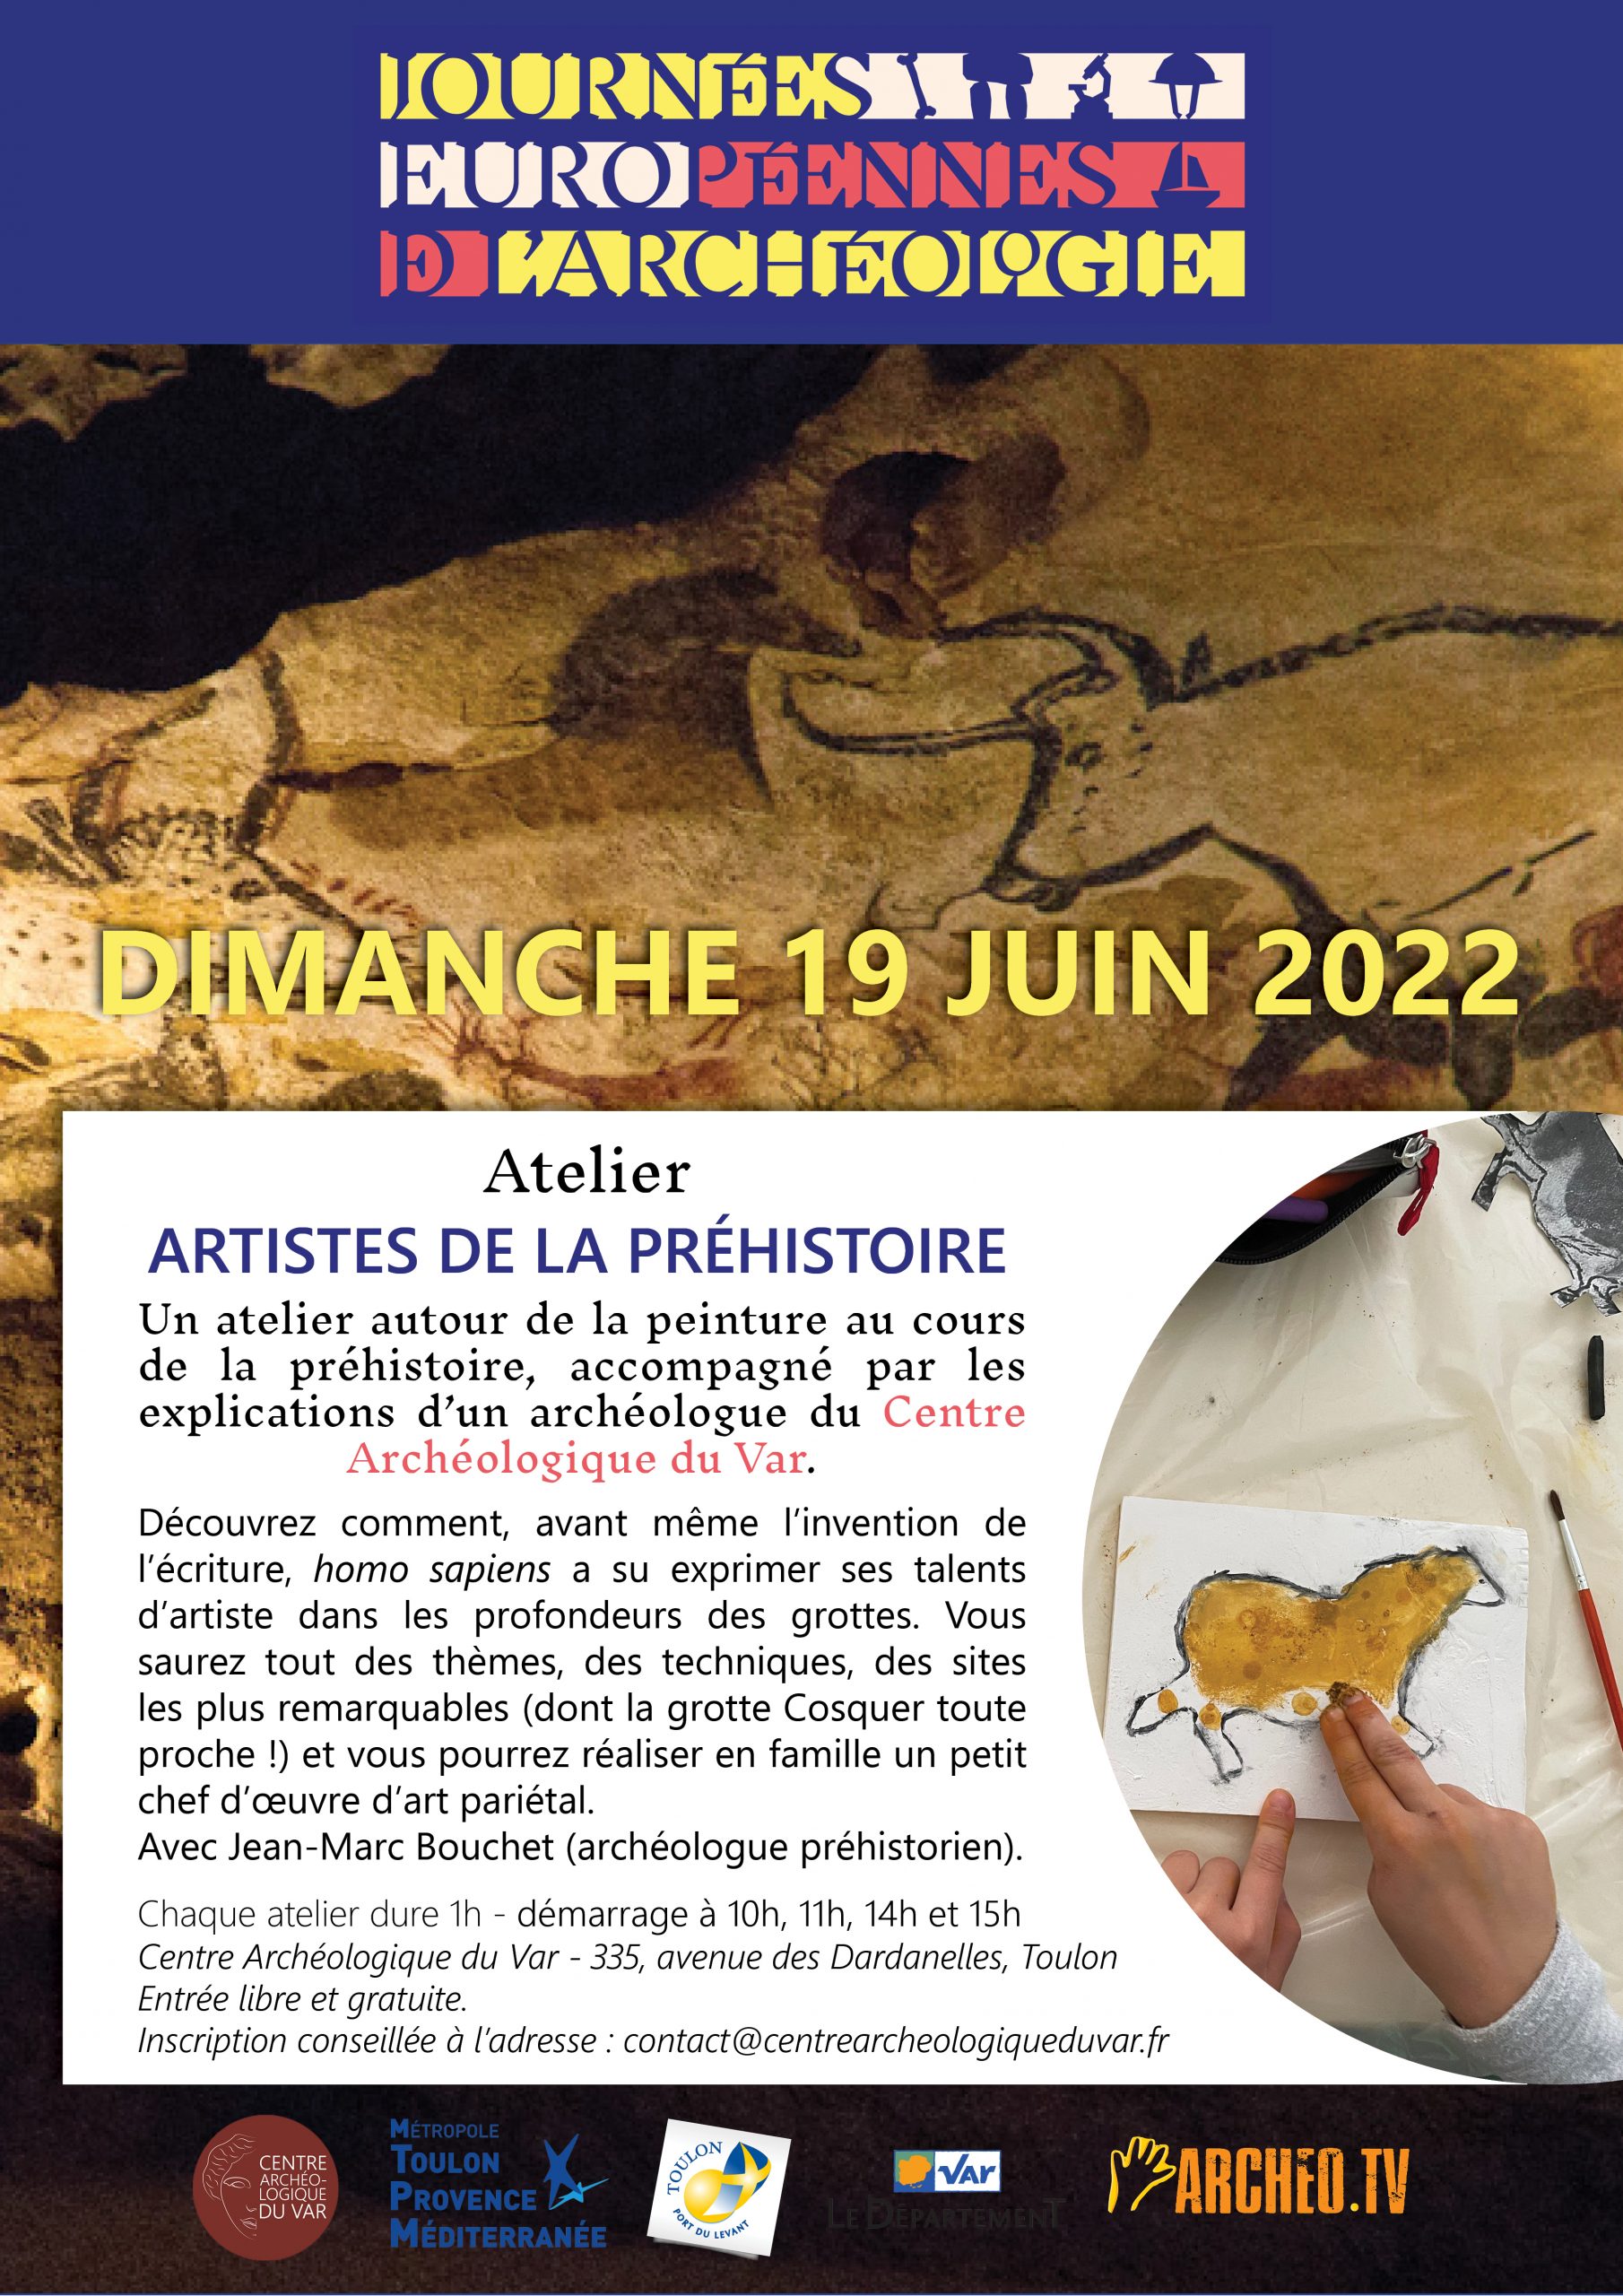 You are currently viewing Journées Européennes de l’Archéologie 2022 – Atelier